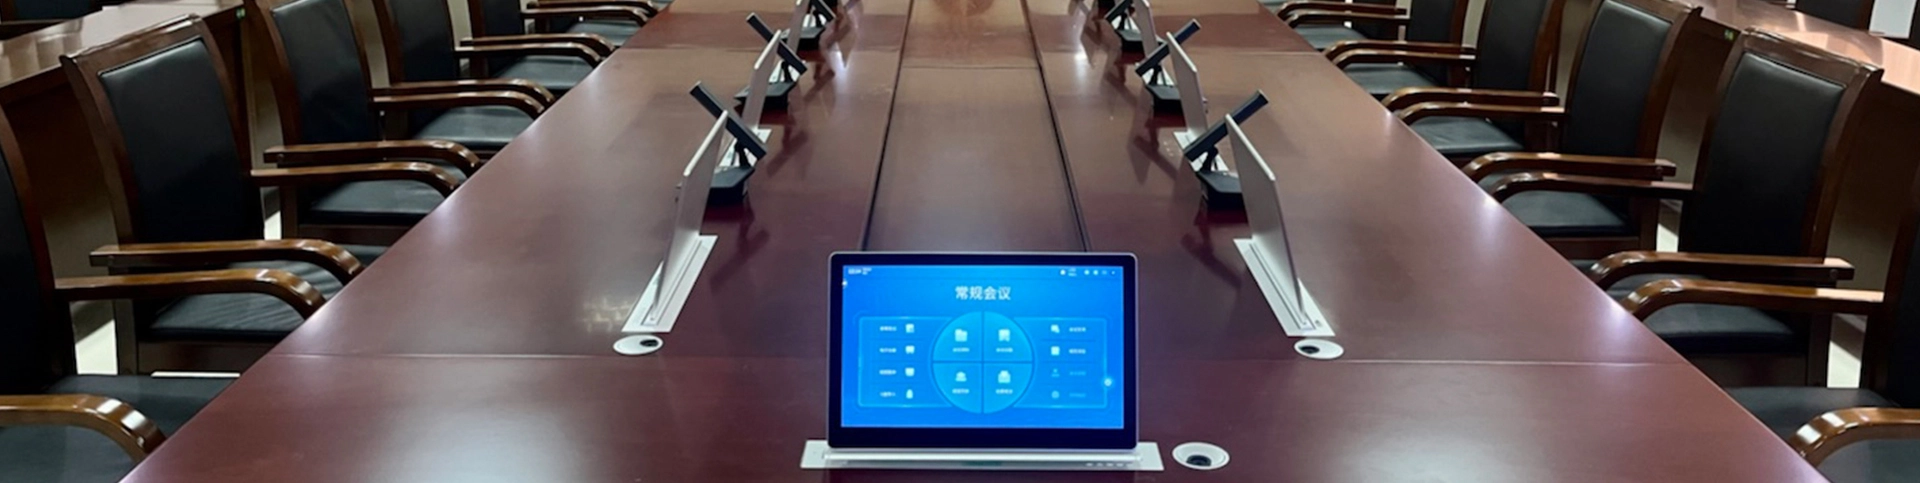 نظام مؤتمرات بلا ورق لمشروع محكمة شانجيانغ